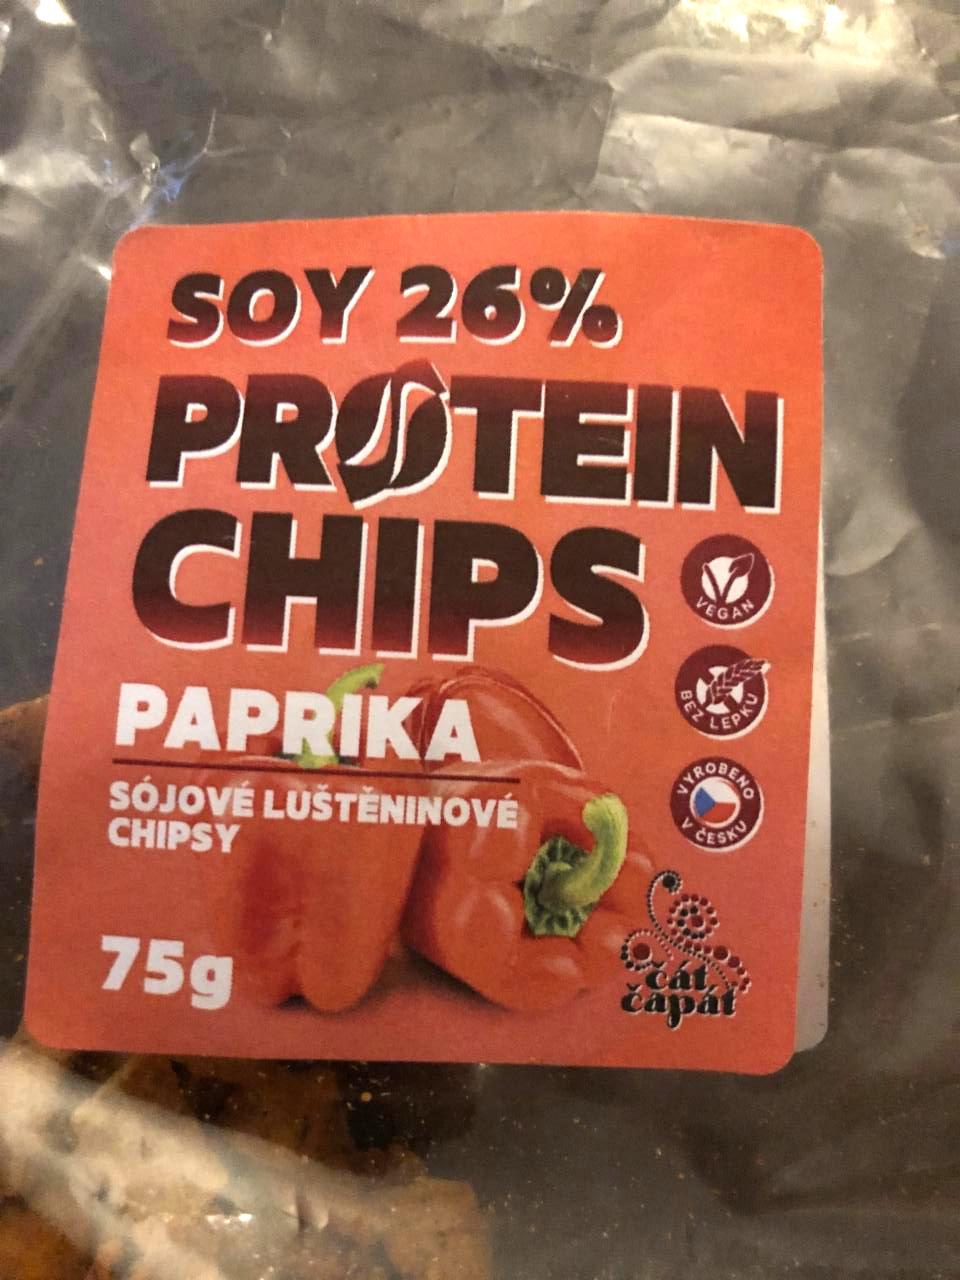 Fotografie - Sojové luštěninové chipsy Paprika Čát Čapát